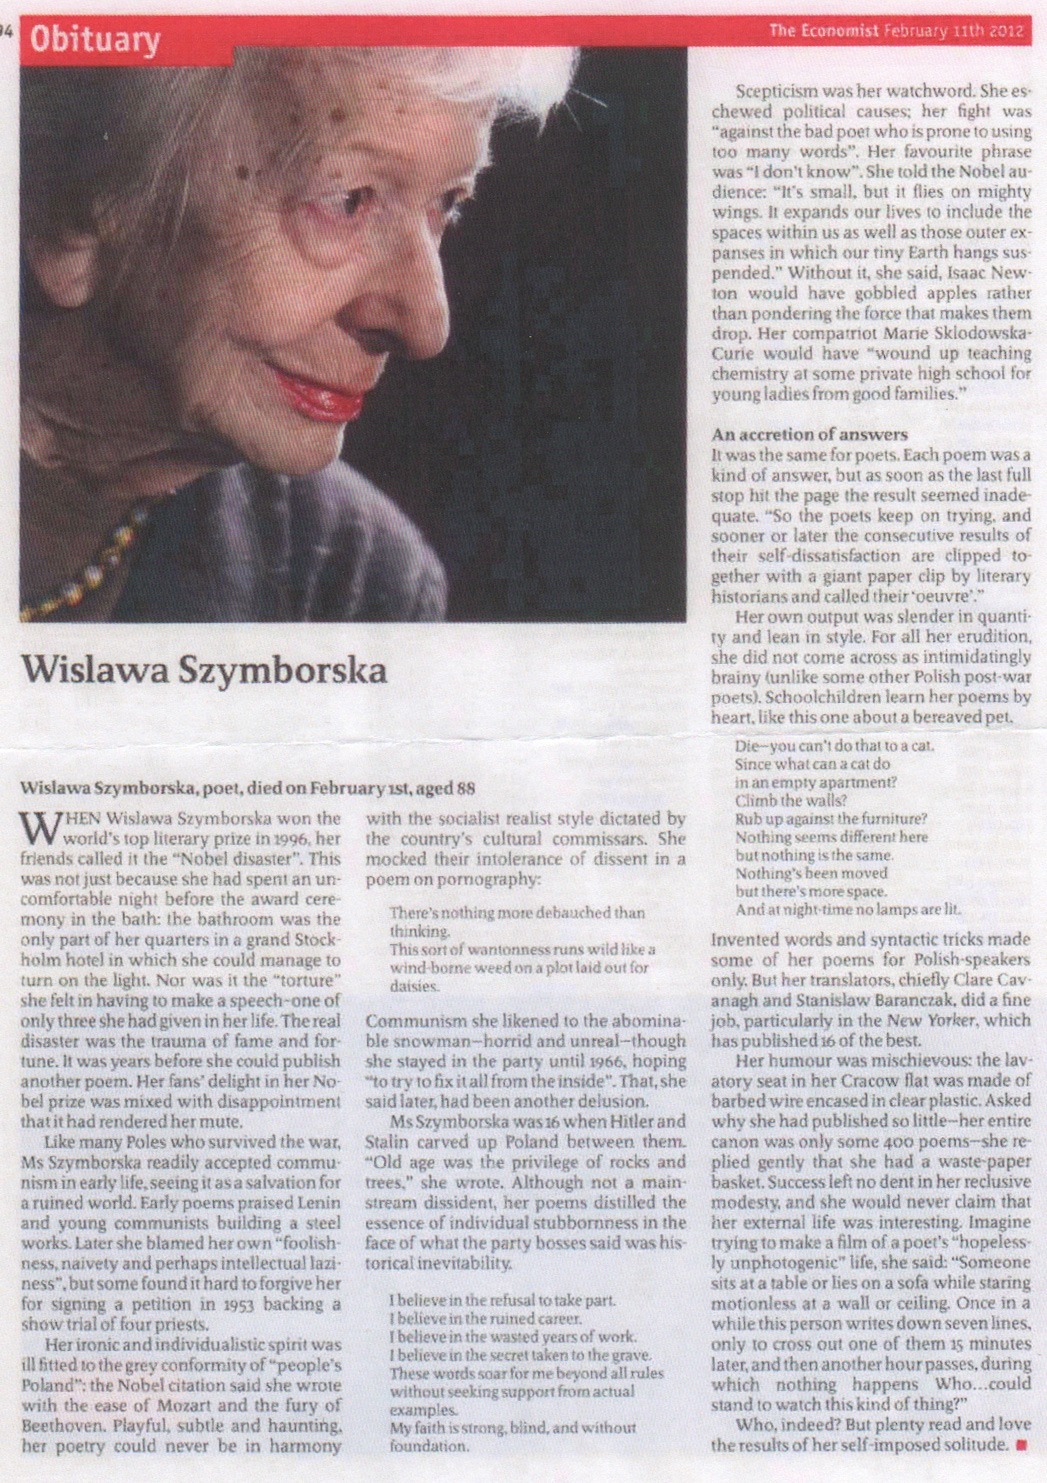 Wisława Szymborska (2 July 1923 – 1 February 2012)